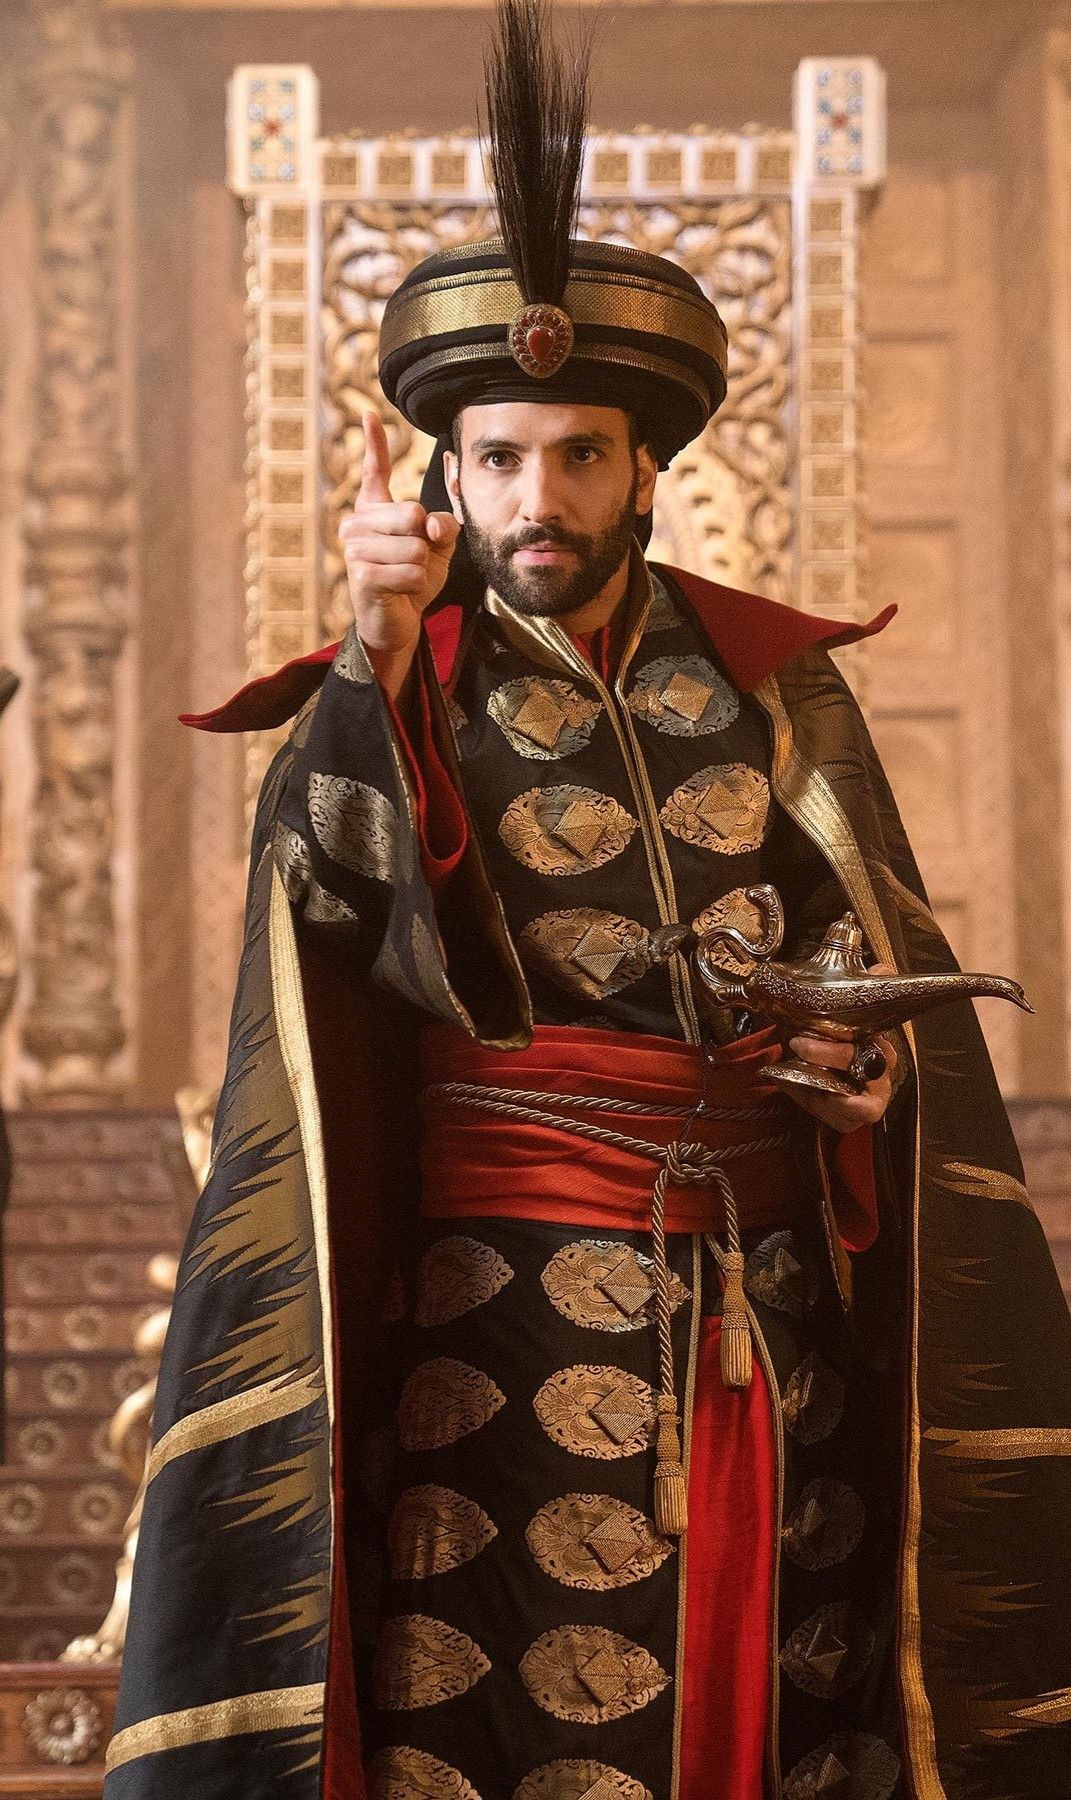 DCnautas - O ator de 'Aladdin' e 'The Old Guard', Merwan Kenzari